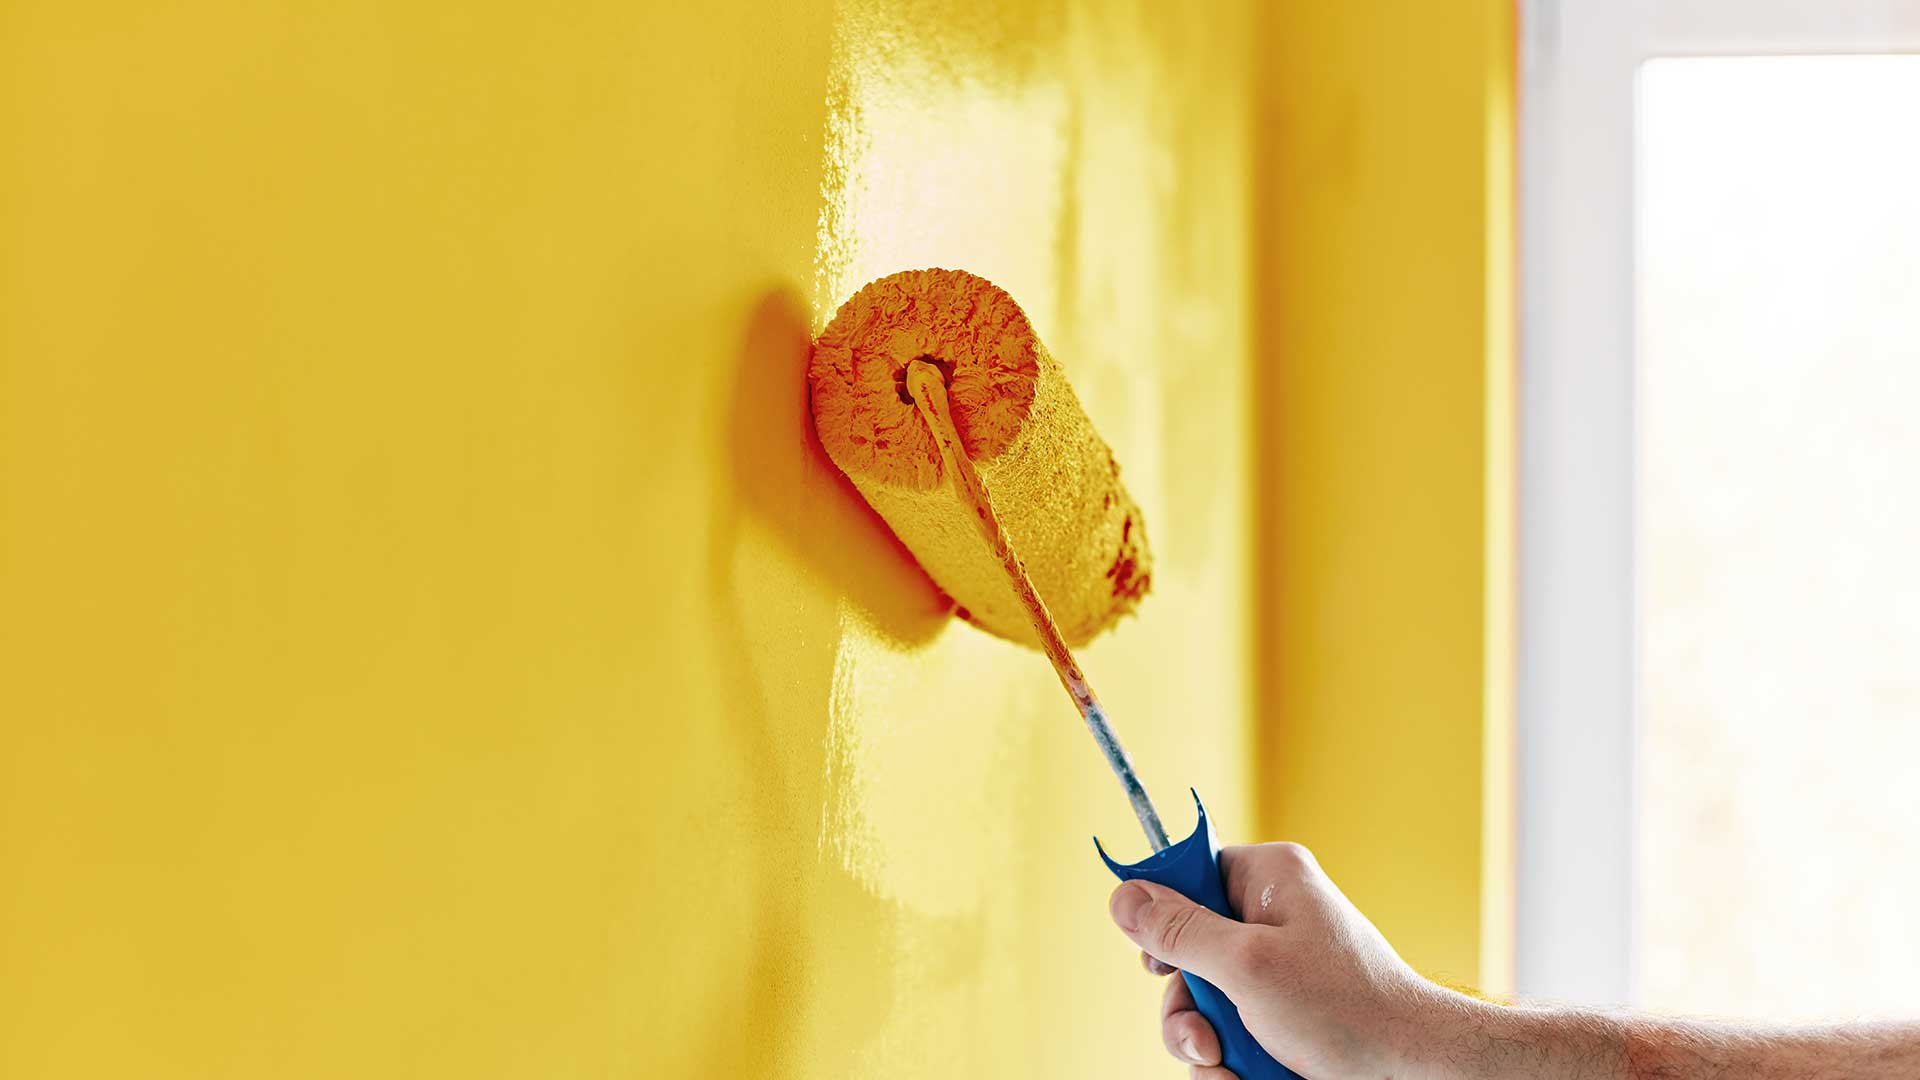 specjalista maluje ścianę na kolor żółty -  w 2021